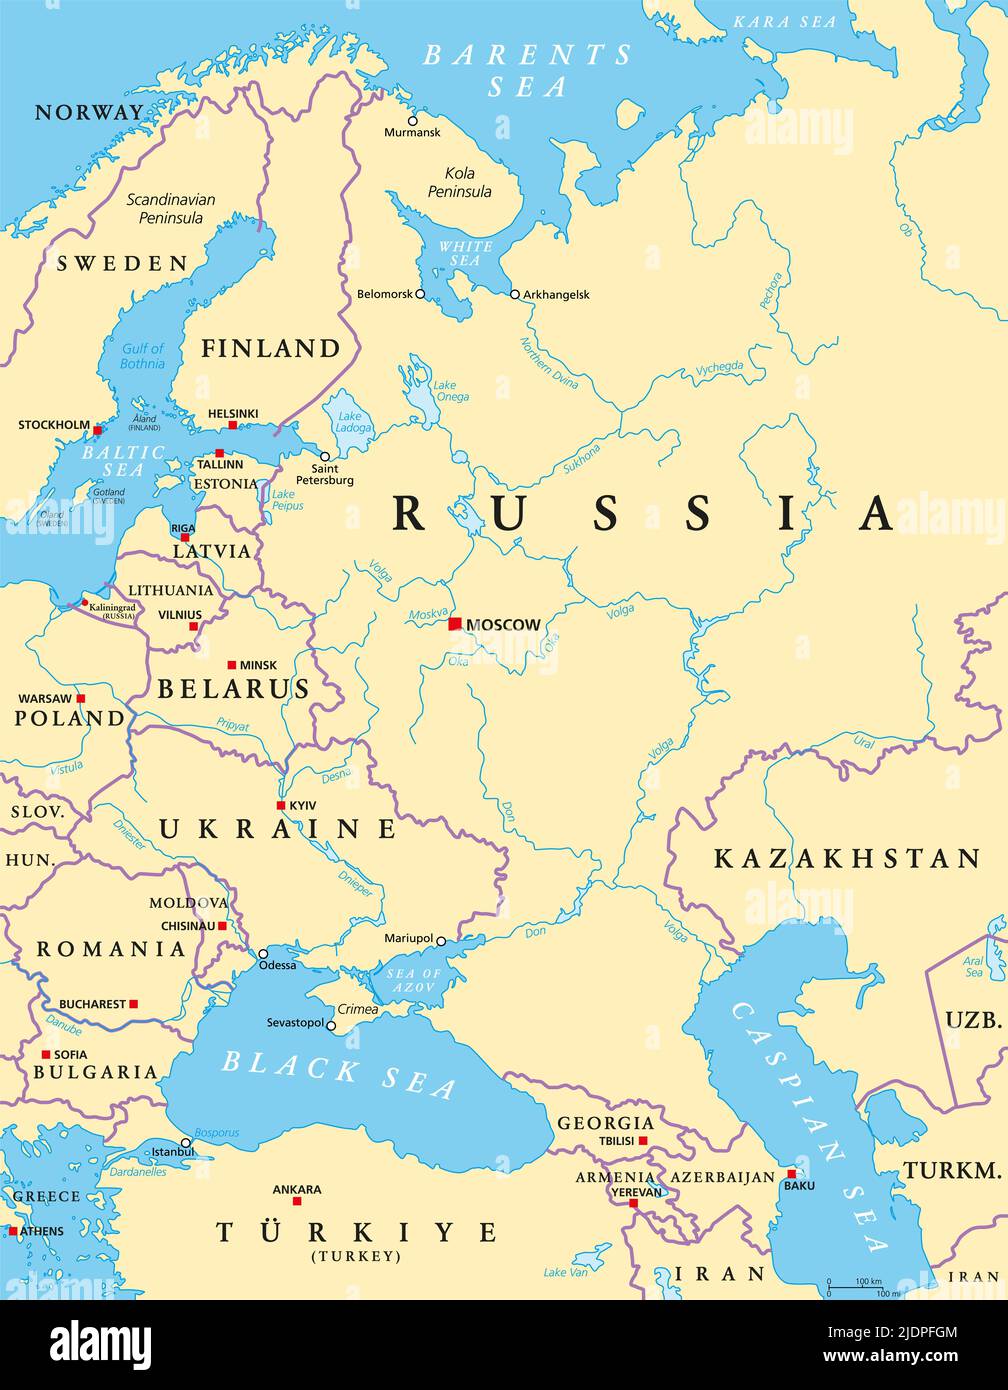 Europa oriental y Asia occidental, mapa político, con capitales y fronteras. Con Mar Negro, Mar Caspio, Rusia Europea, y parte de Asia Central. Foto de stock